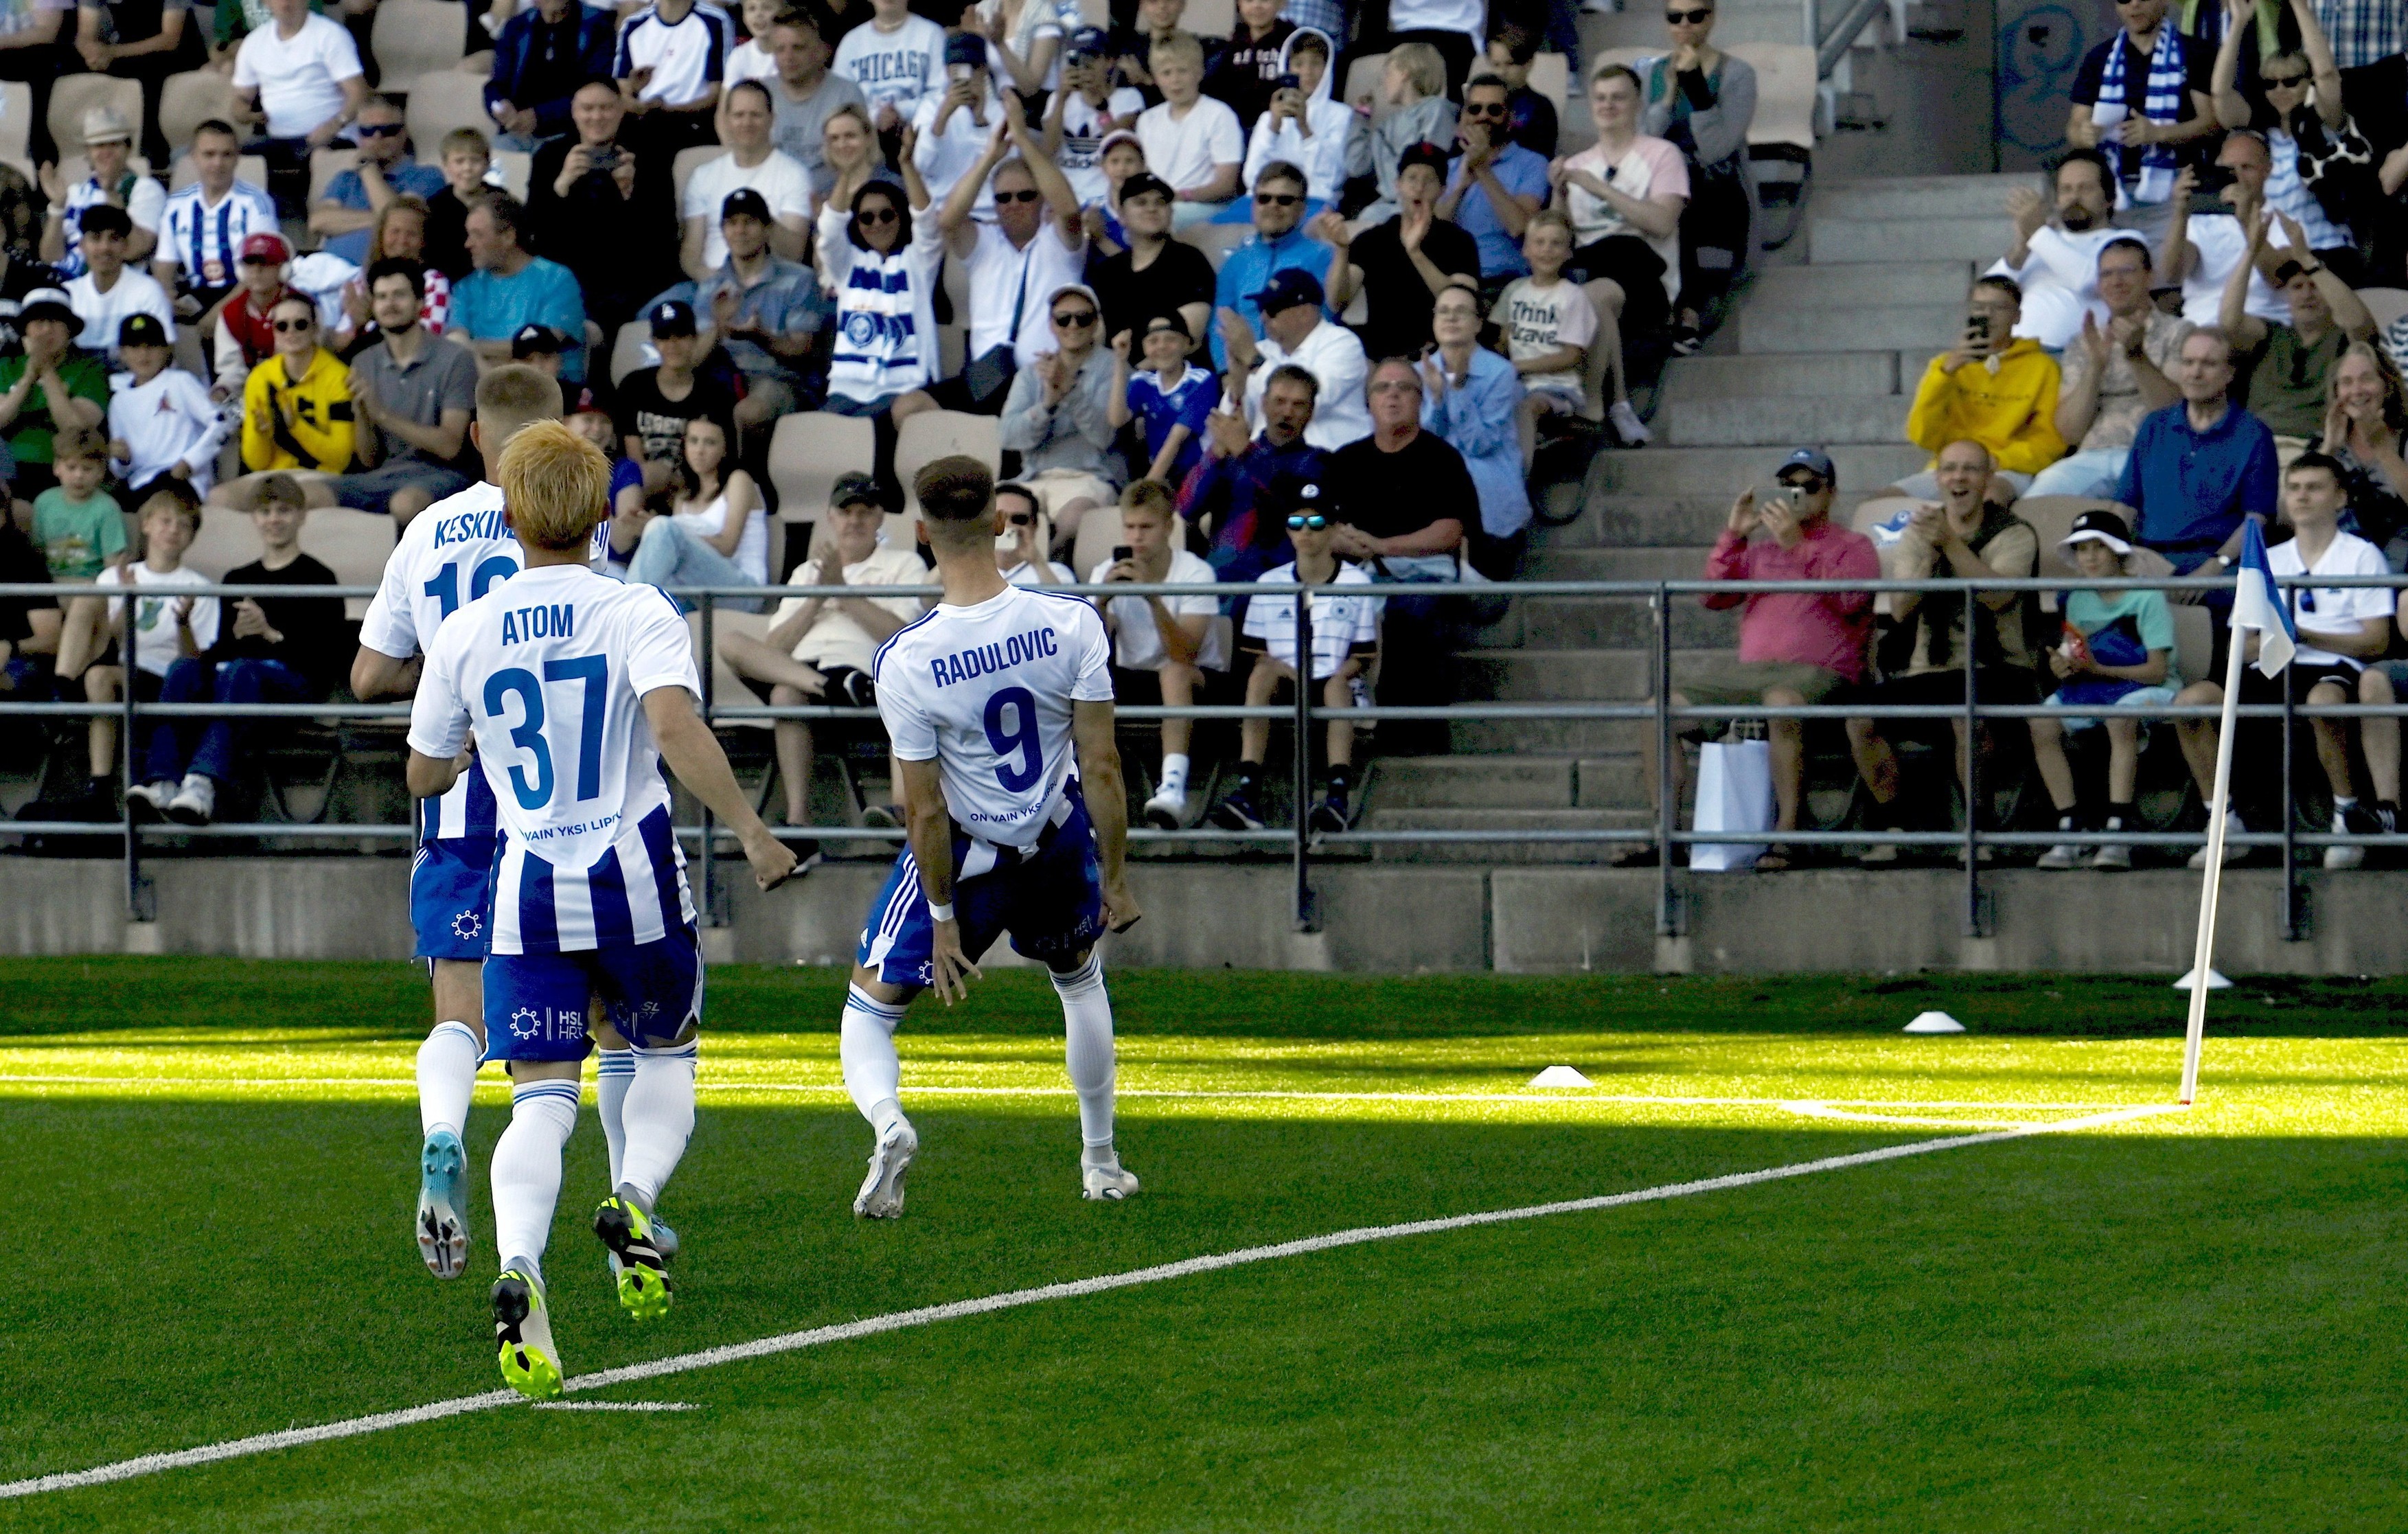 HJK Helsinki, victorie categorică în campionat înainte de meciul cu Farul Constanța! Un jucător a marcat un hattrick